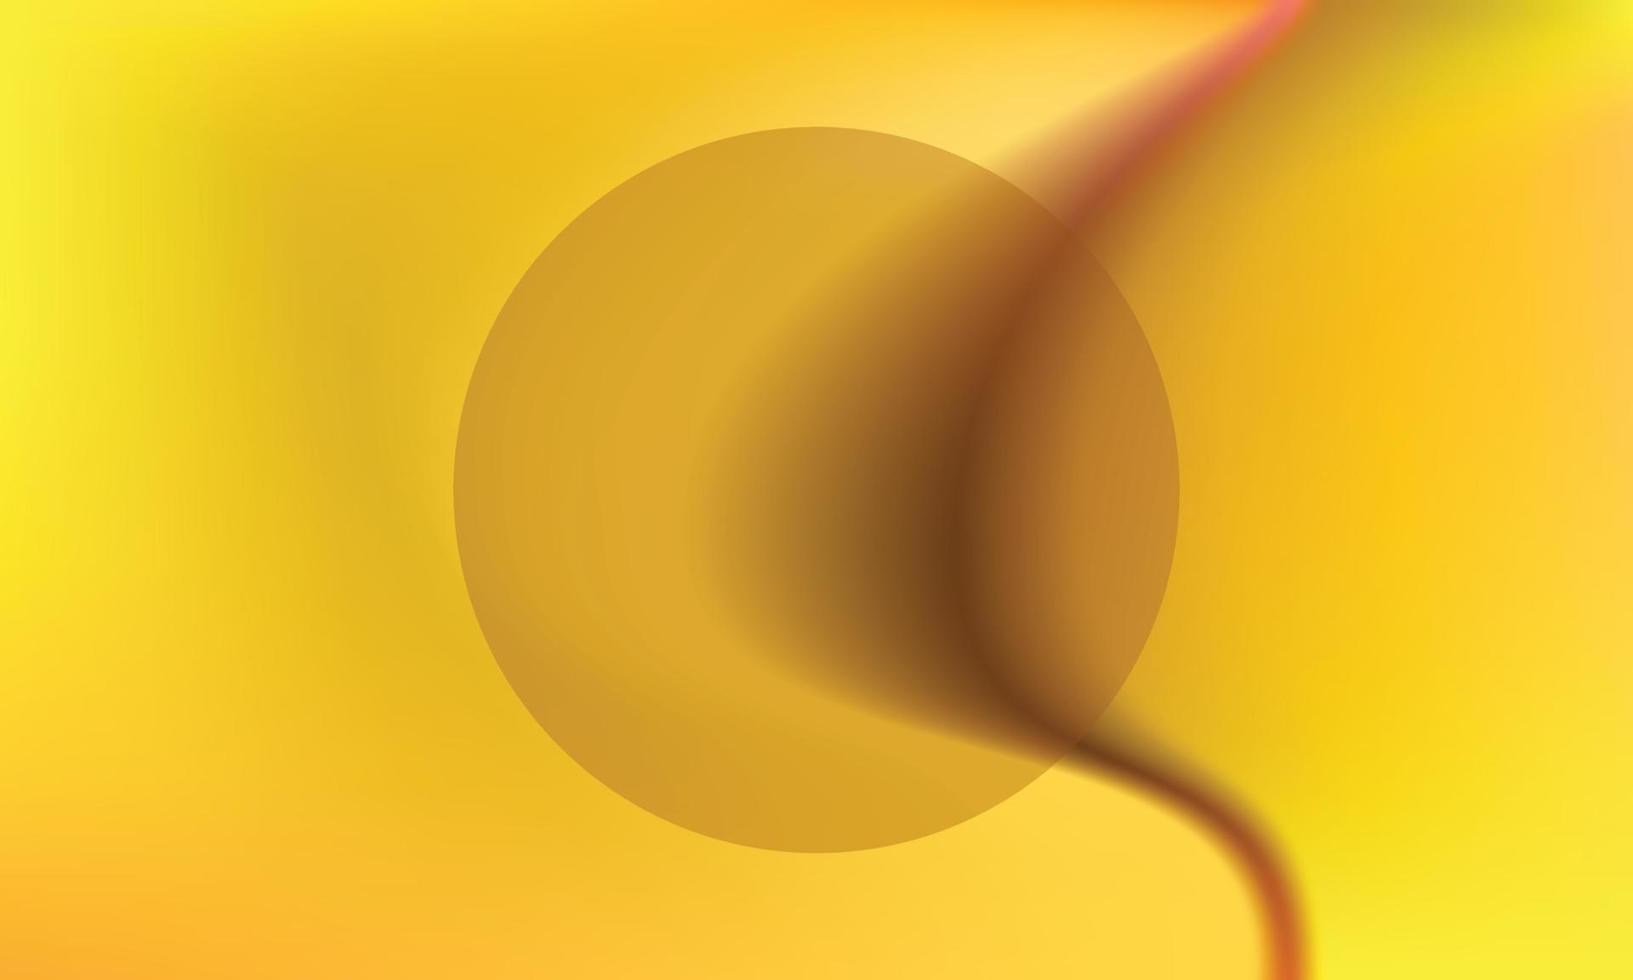 geel oranje abstract kromme achtergrond vector illustratie